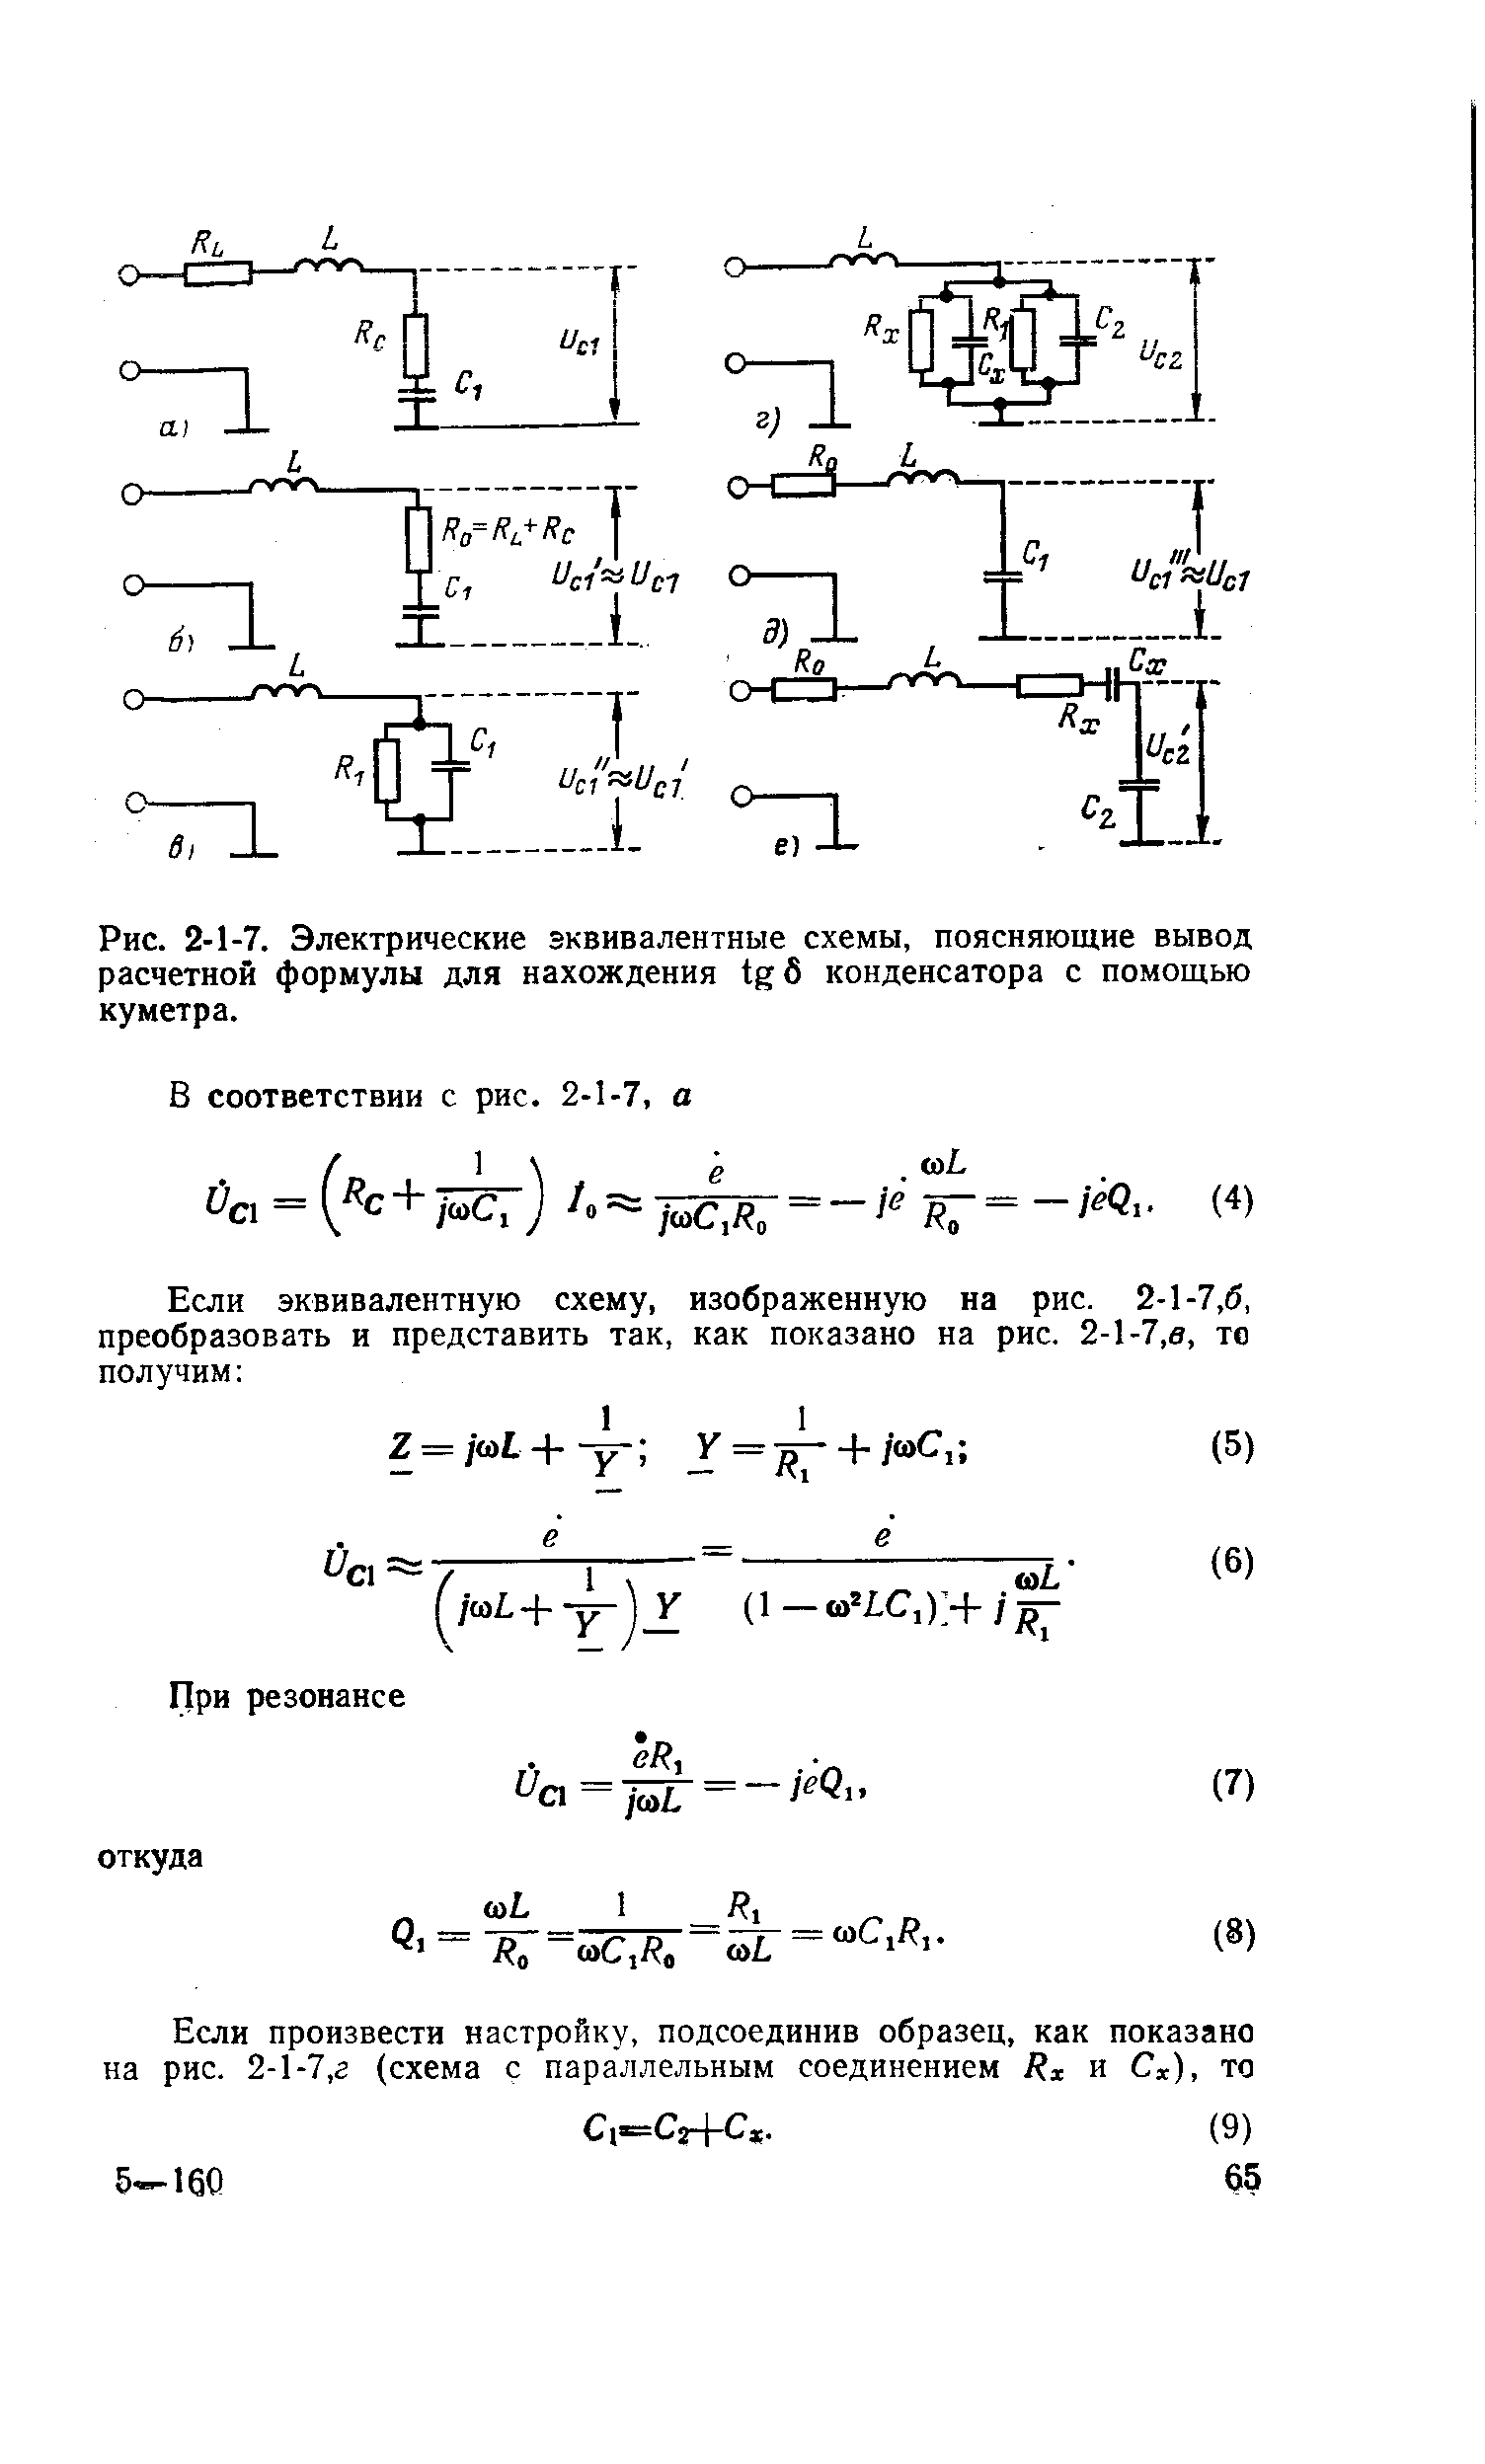 Рис. 2-1-7. Электрические эквивалентные схемы, поясняющие вывод расчетной формулы для нахождения б конденсатора с помощью куметра.
